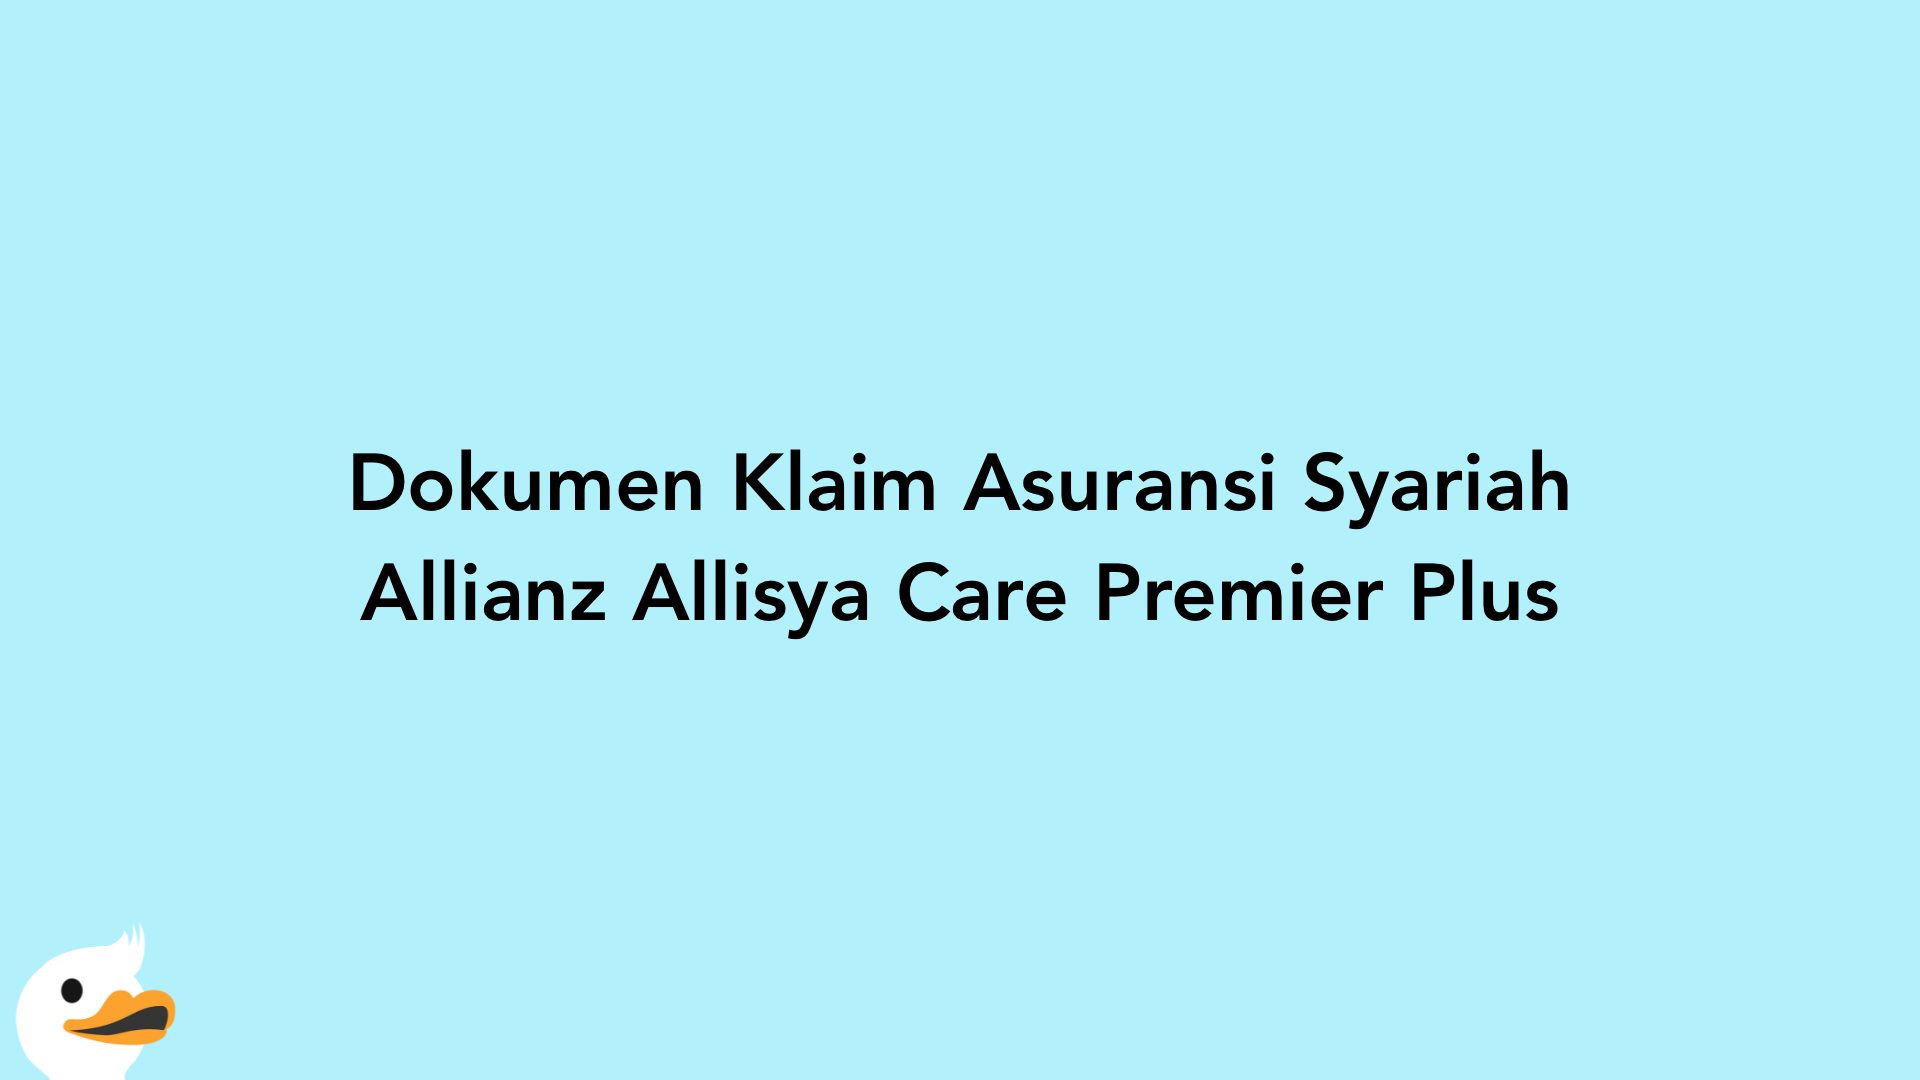 Dokumen Klaim Asuransi Syariah Allianz Allisya Care Premier Plus